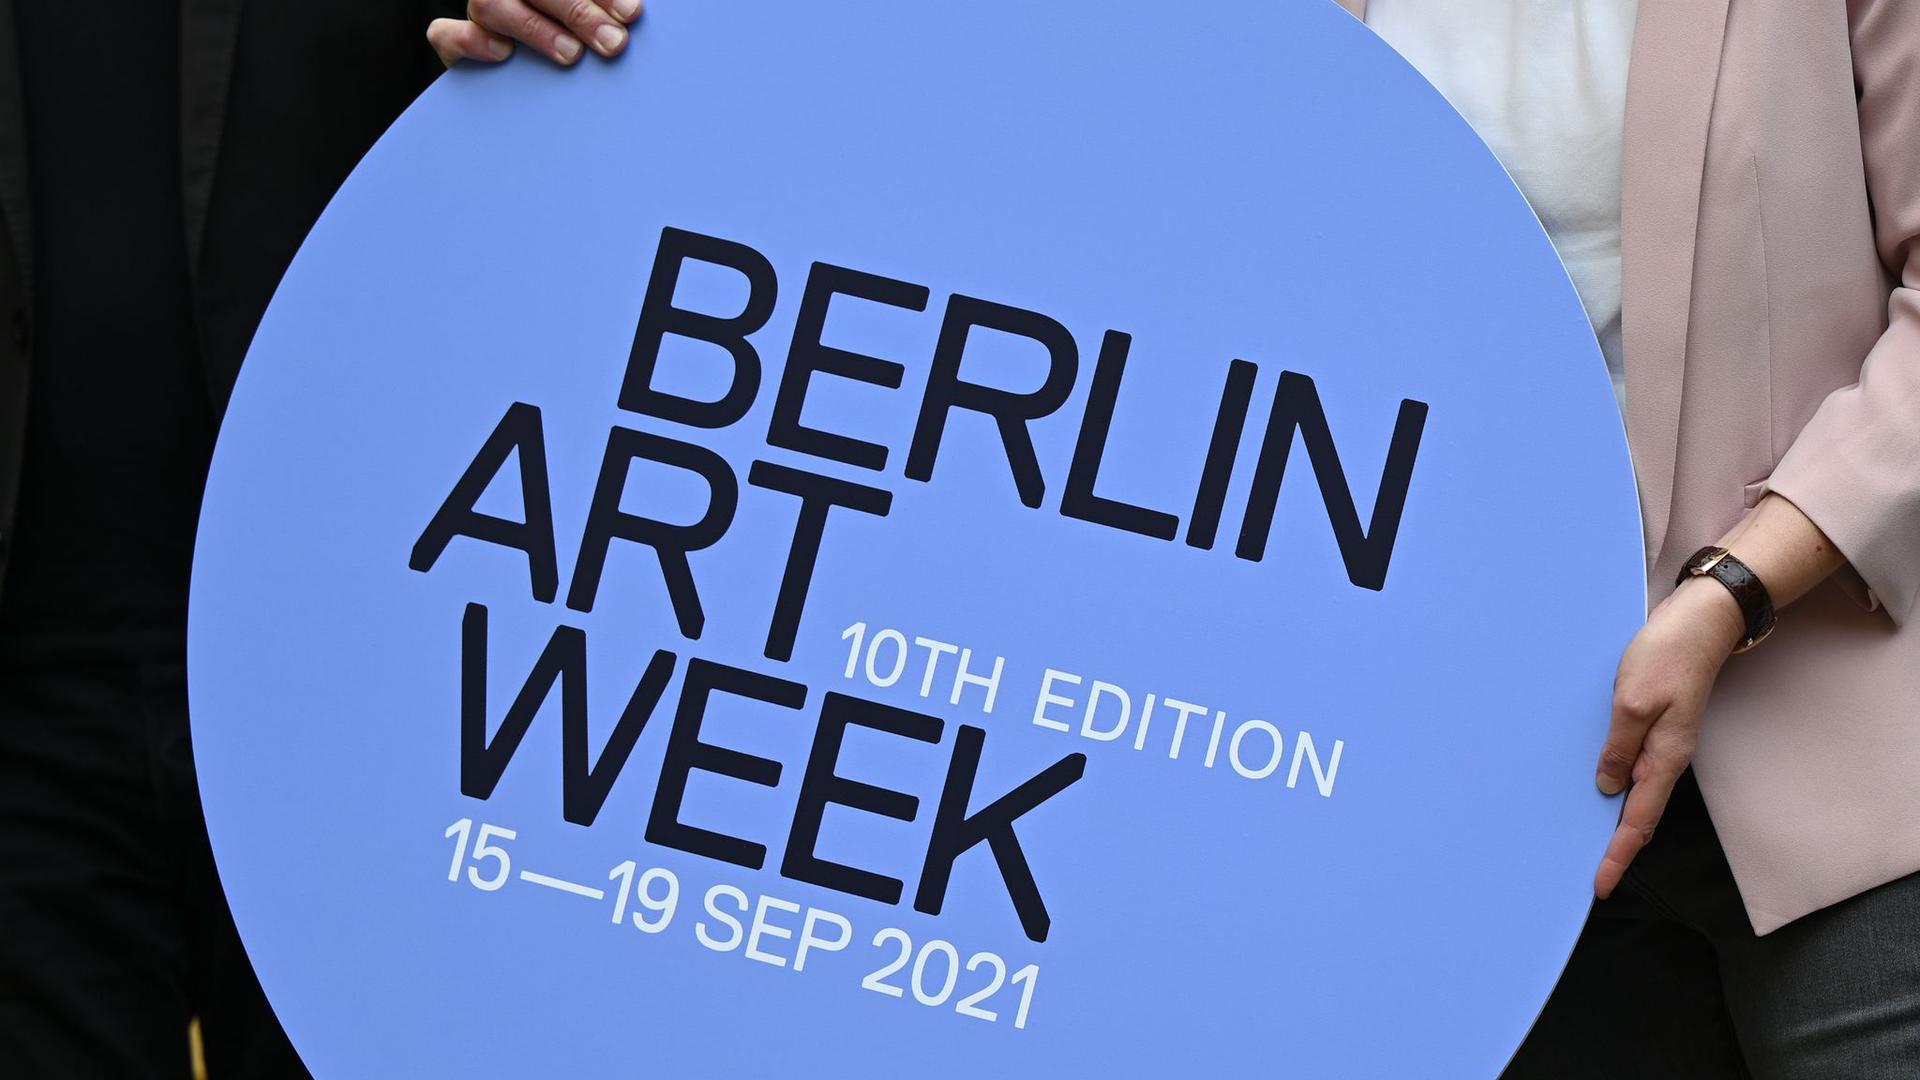 Die Berliner Art Week findet vom 15. Bis 19. September 2021 statt.